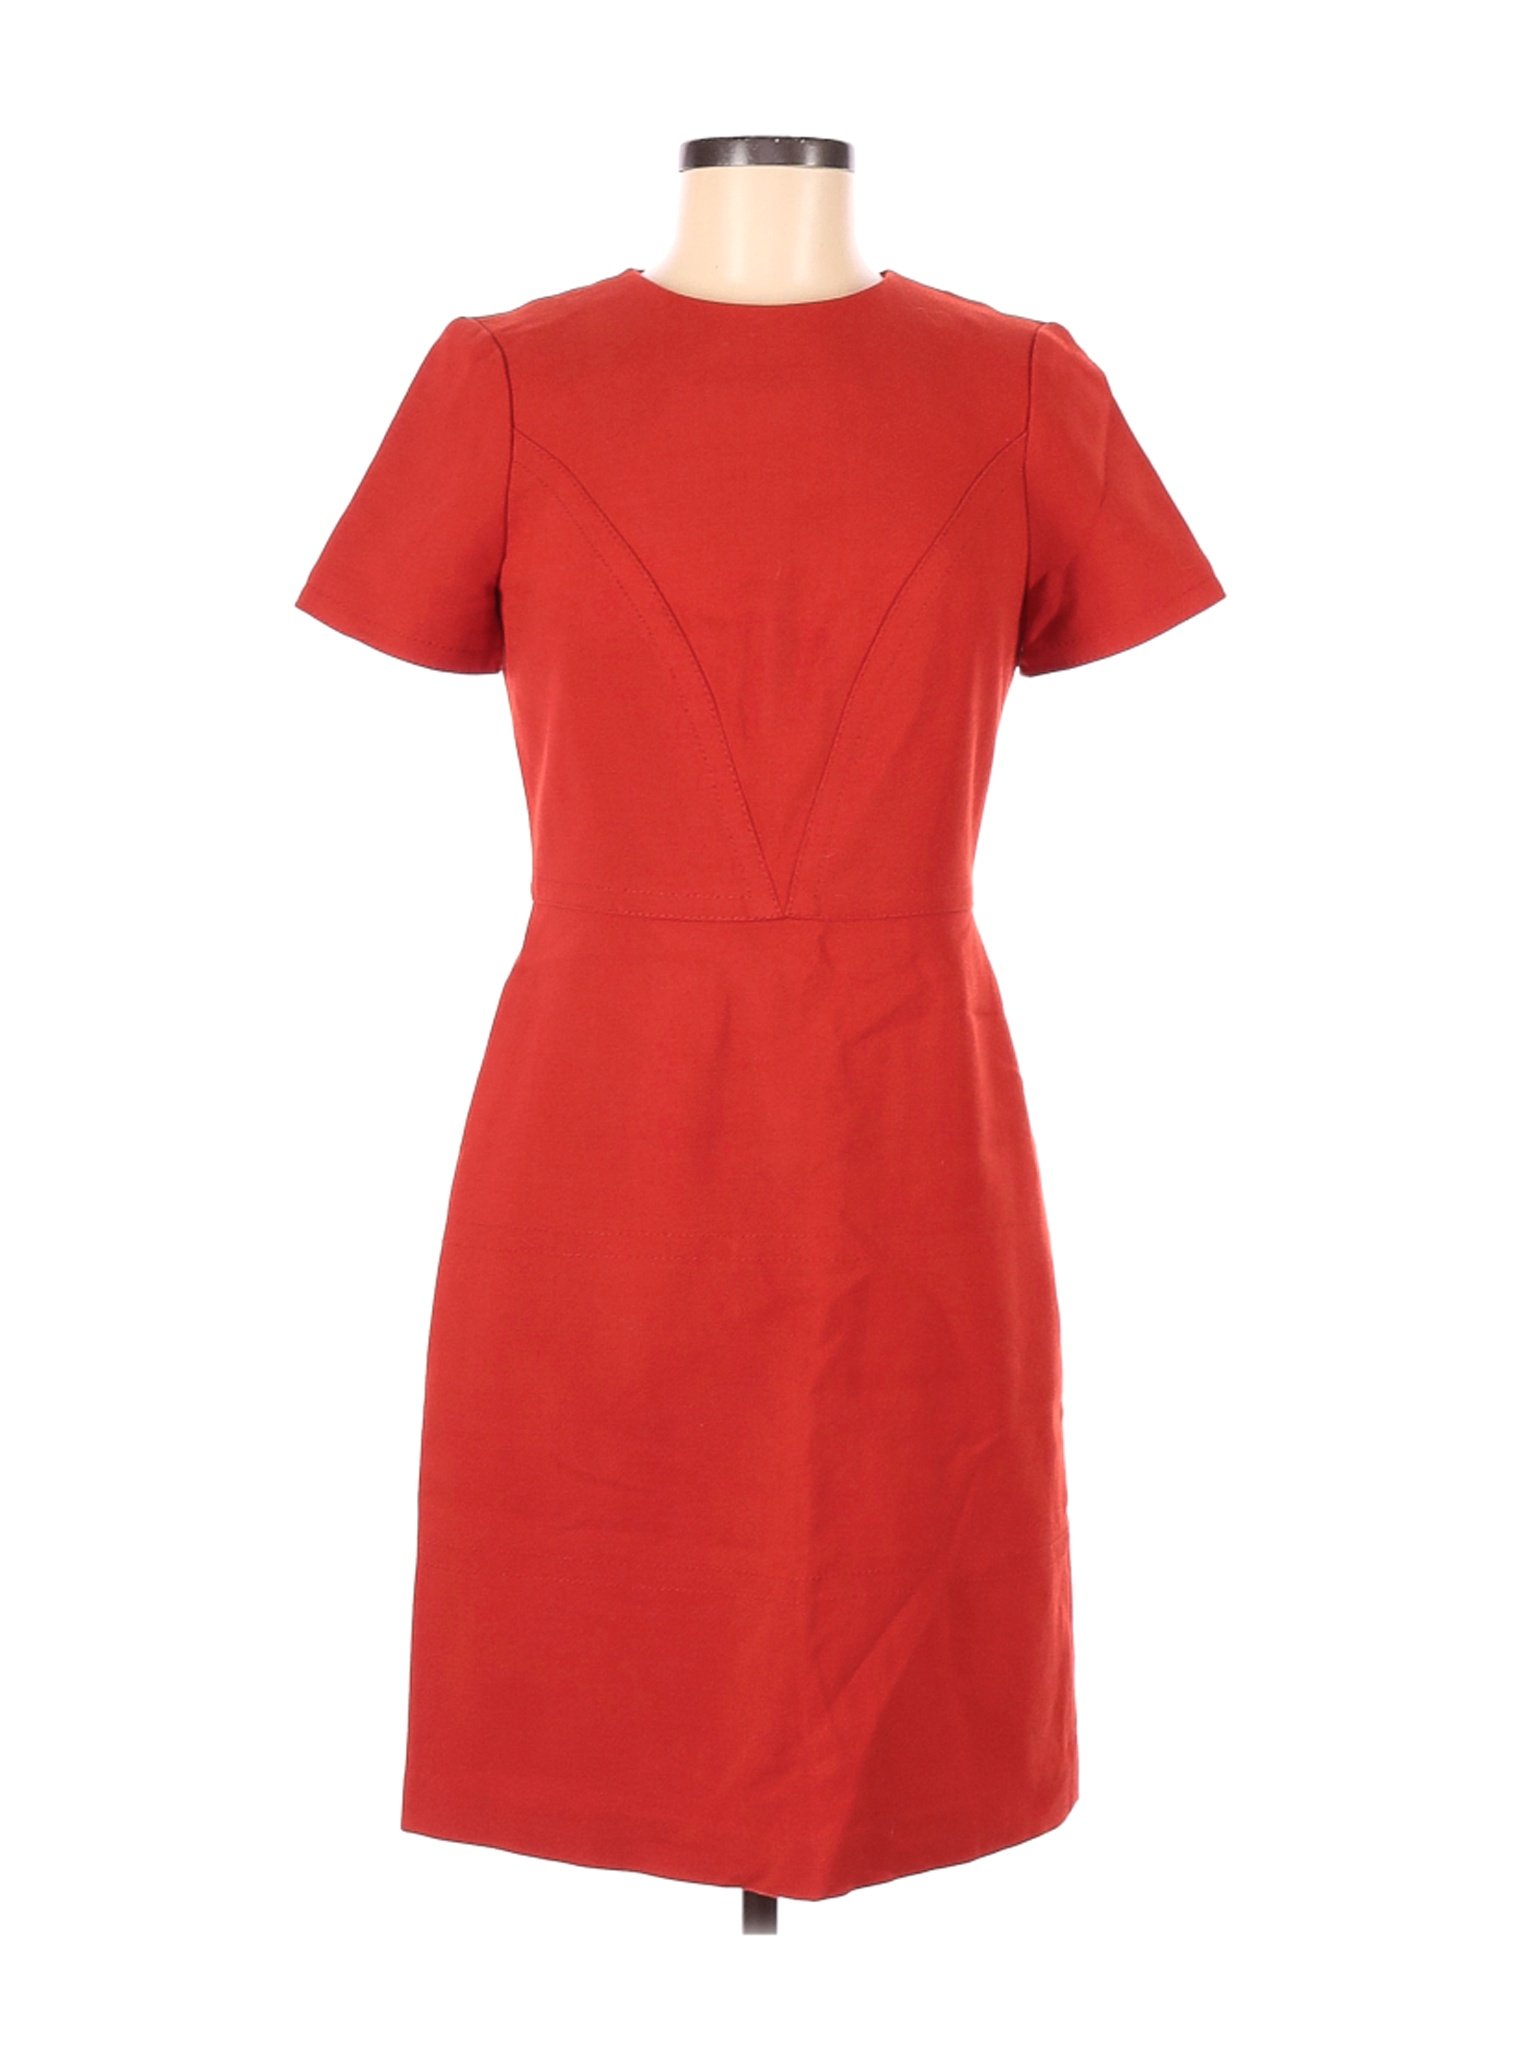 Banana Republic Women Red Casual Dress 6 | eBay